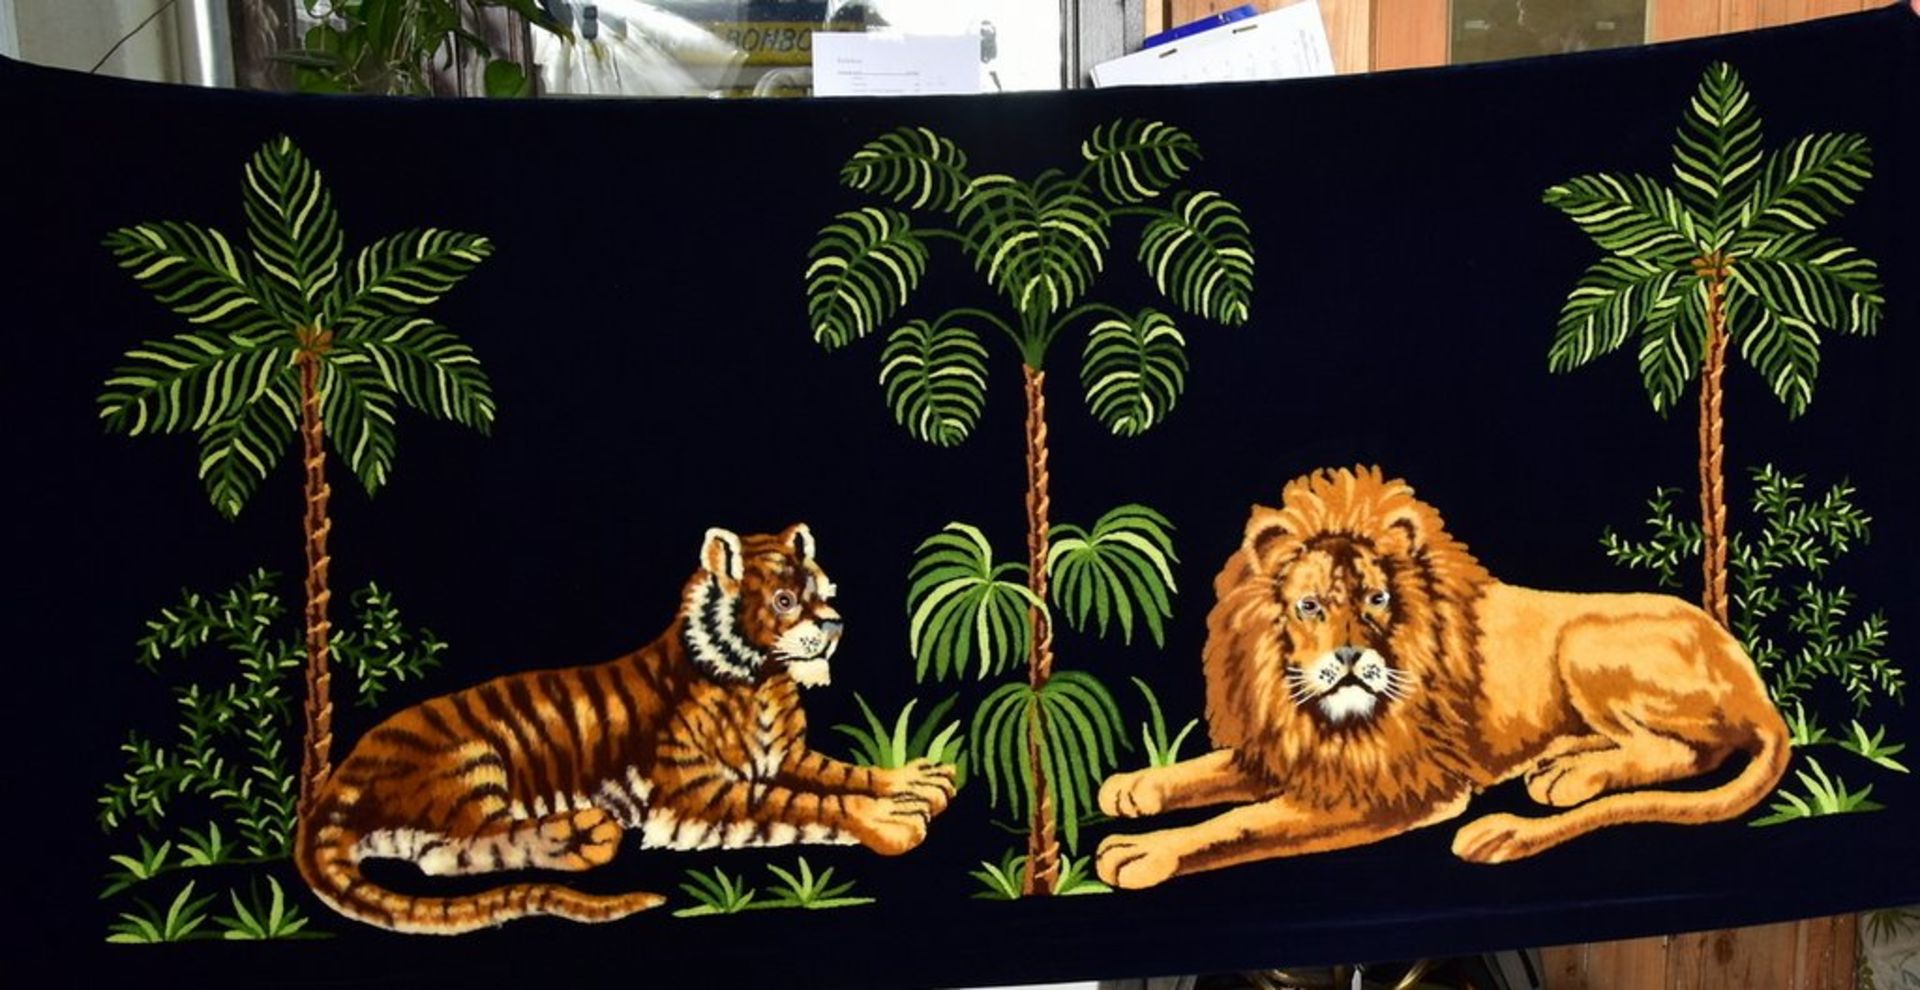 Hochwertige Samtdecke, mit Palmen, Tiger und Löwe plastisch bestickt, Tiere haben Glasaugen, um